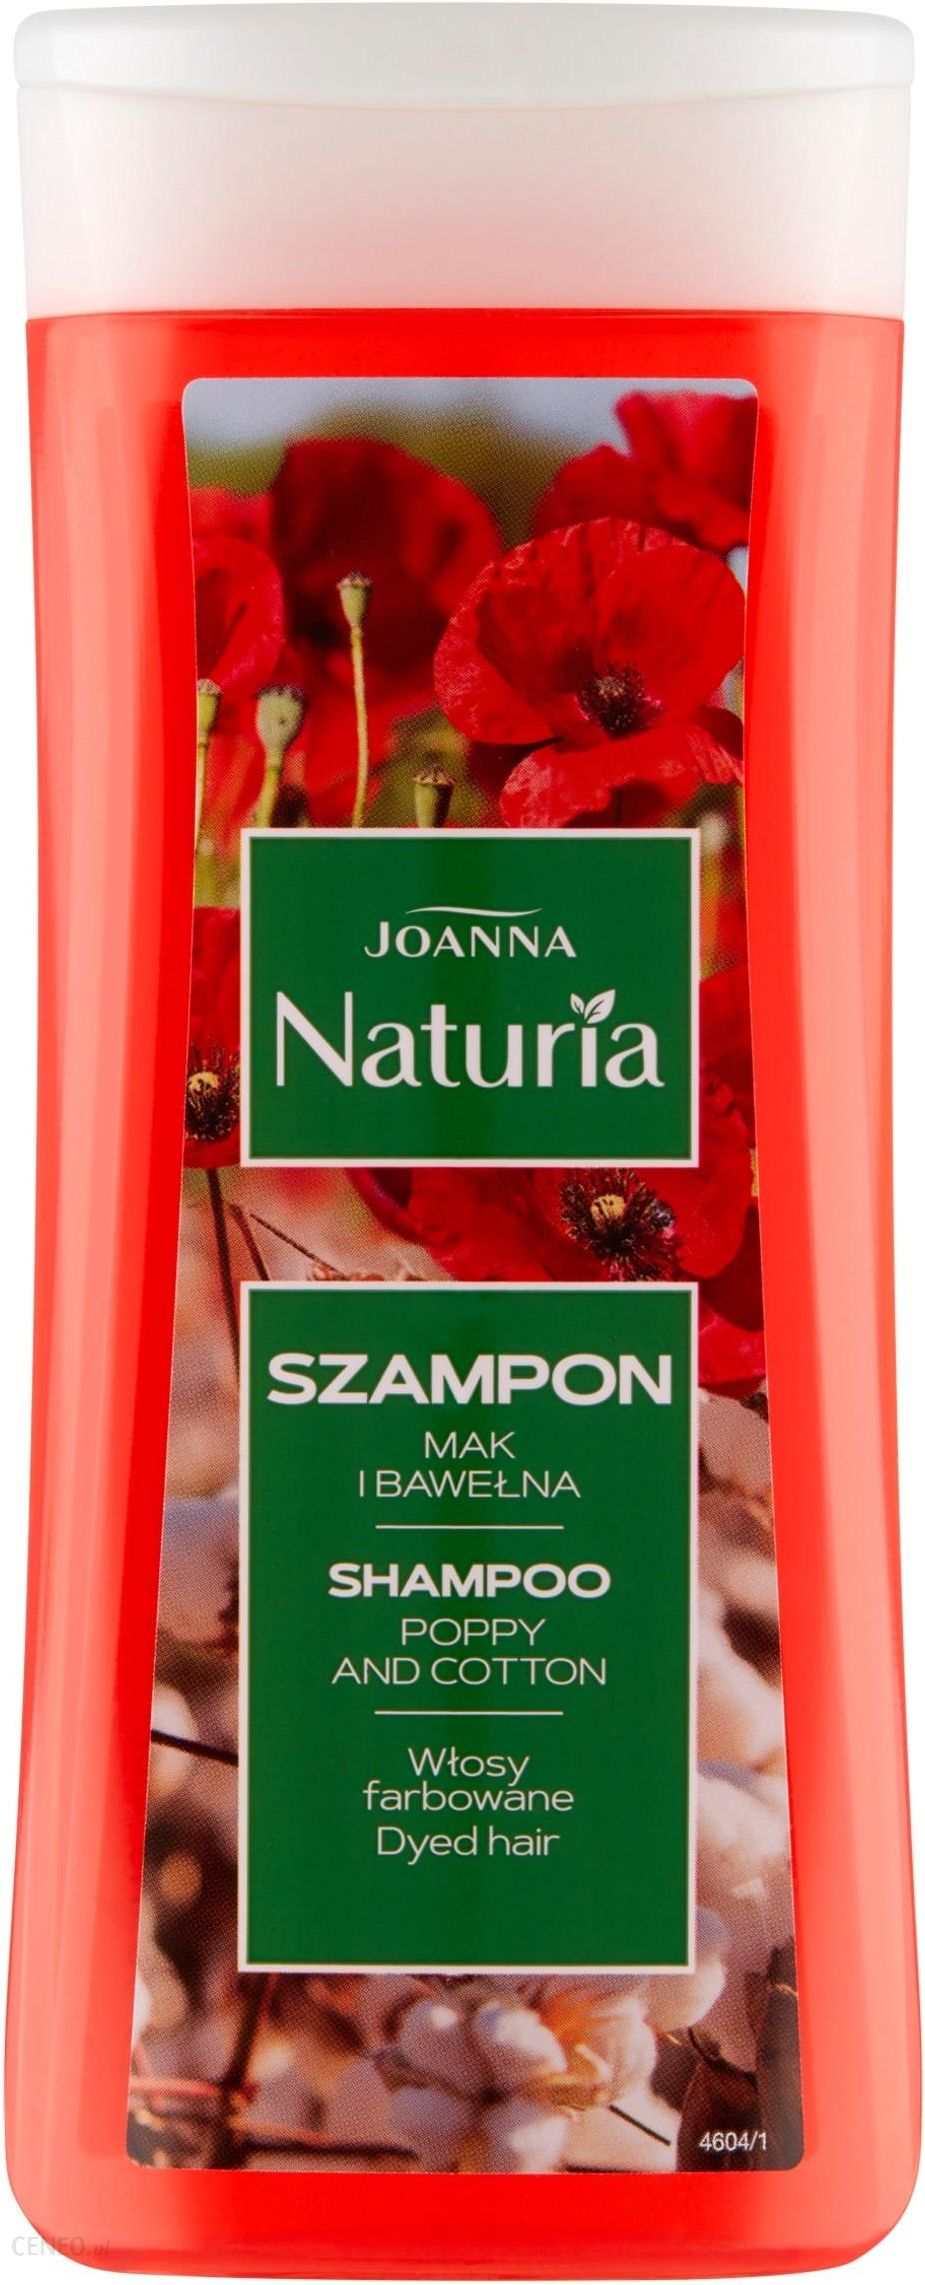 joanna naturia szampon do włosów farbowanych